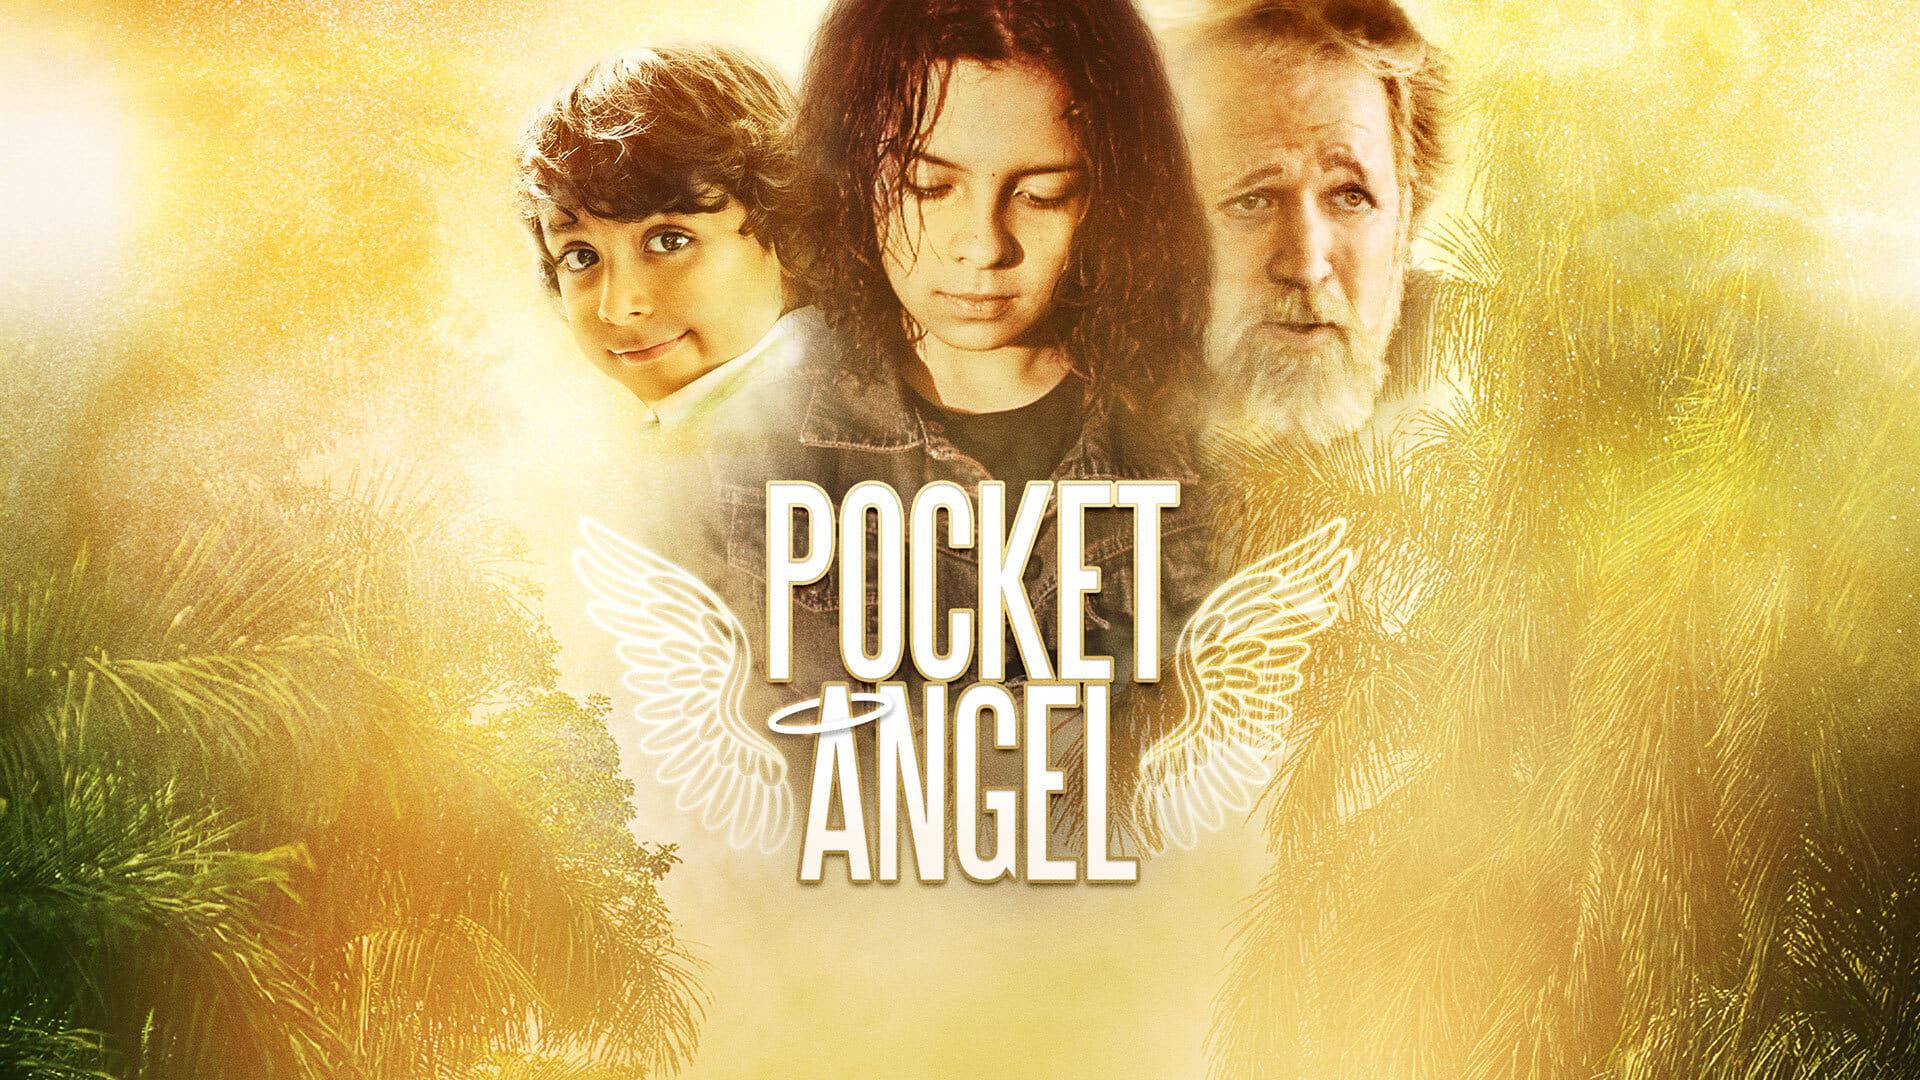 Pocket Angel backdrop